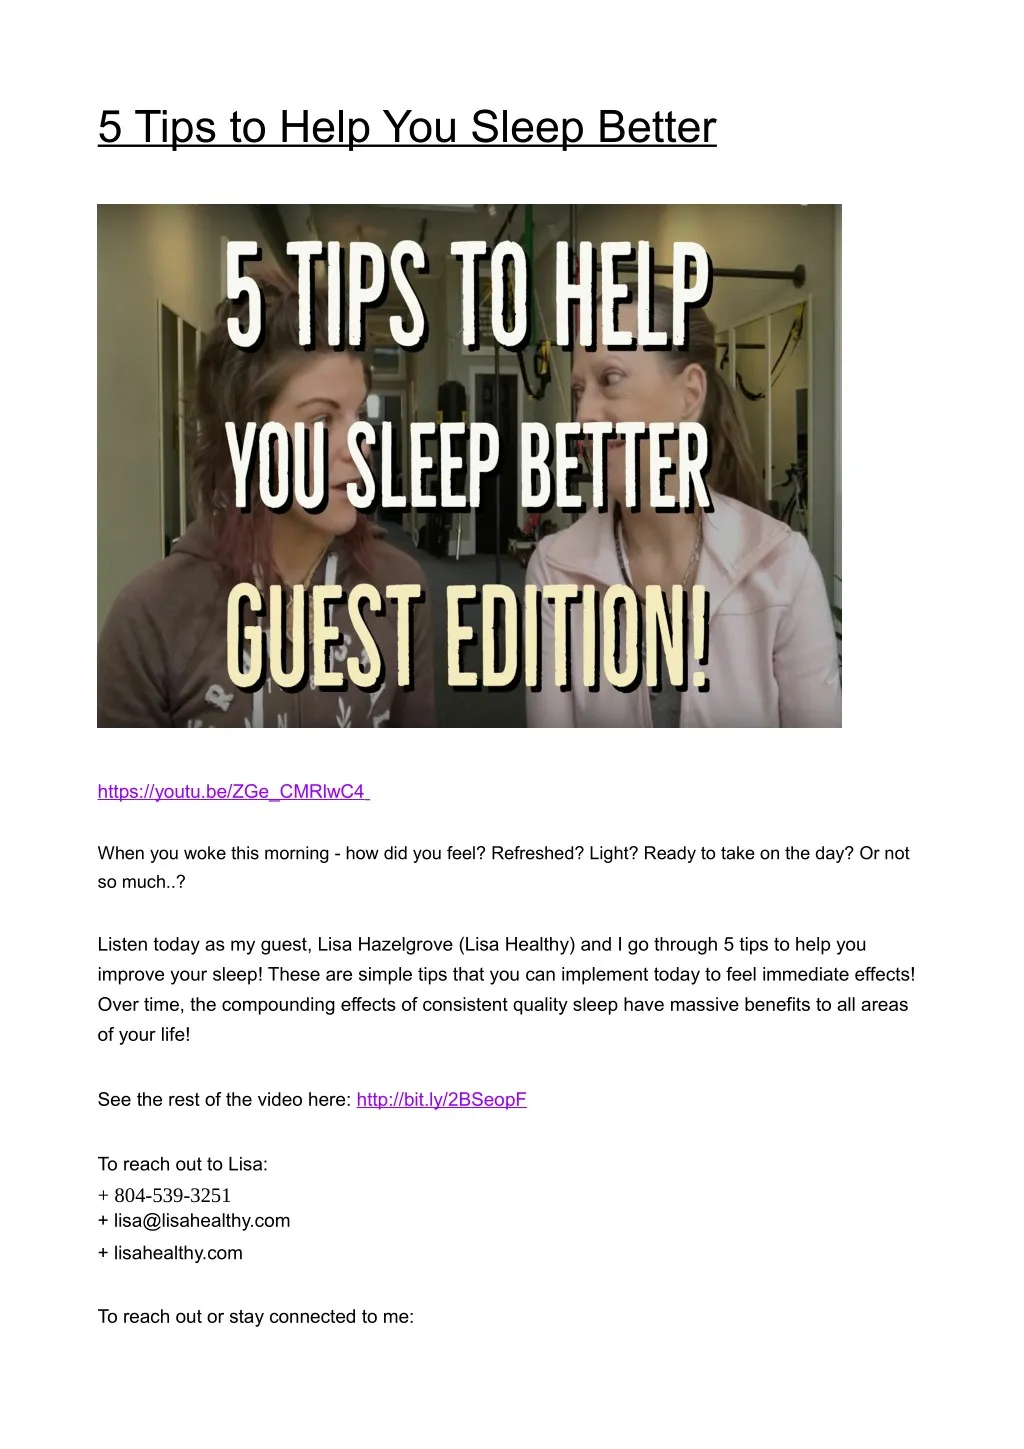 5 tips to help you sleep better